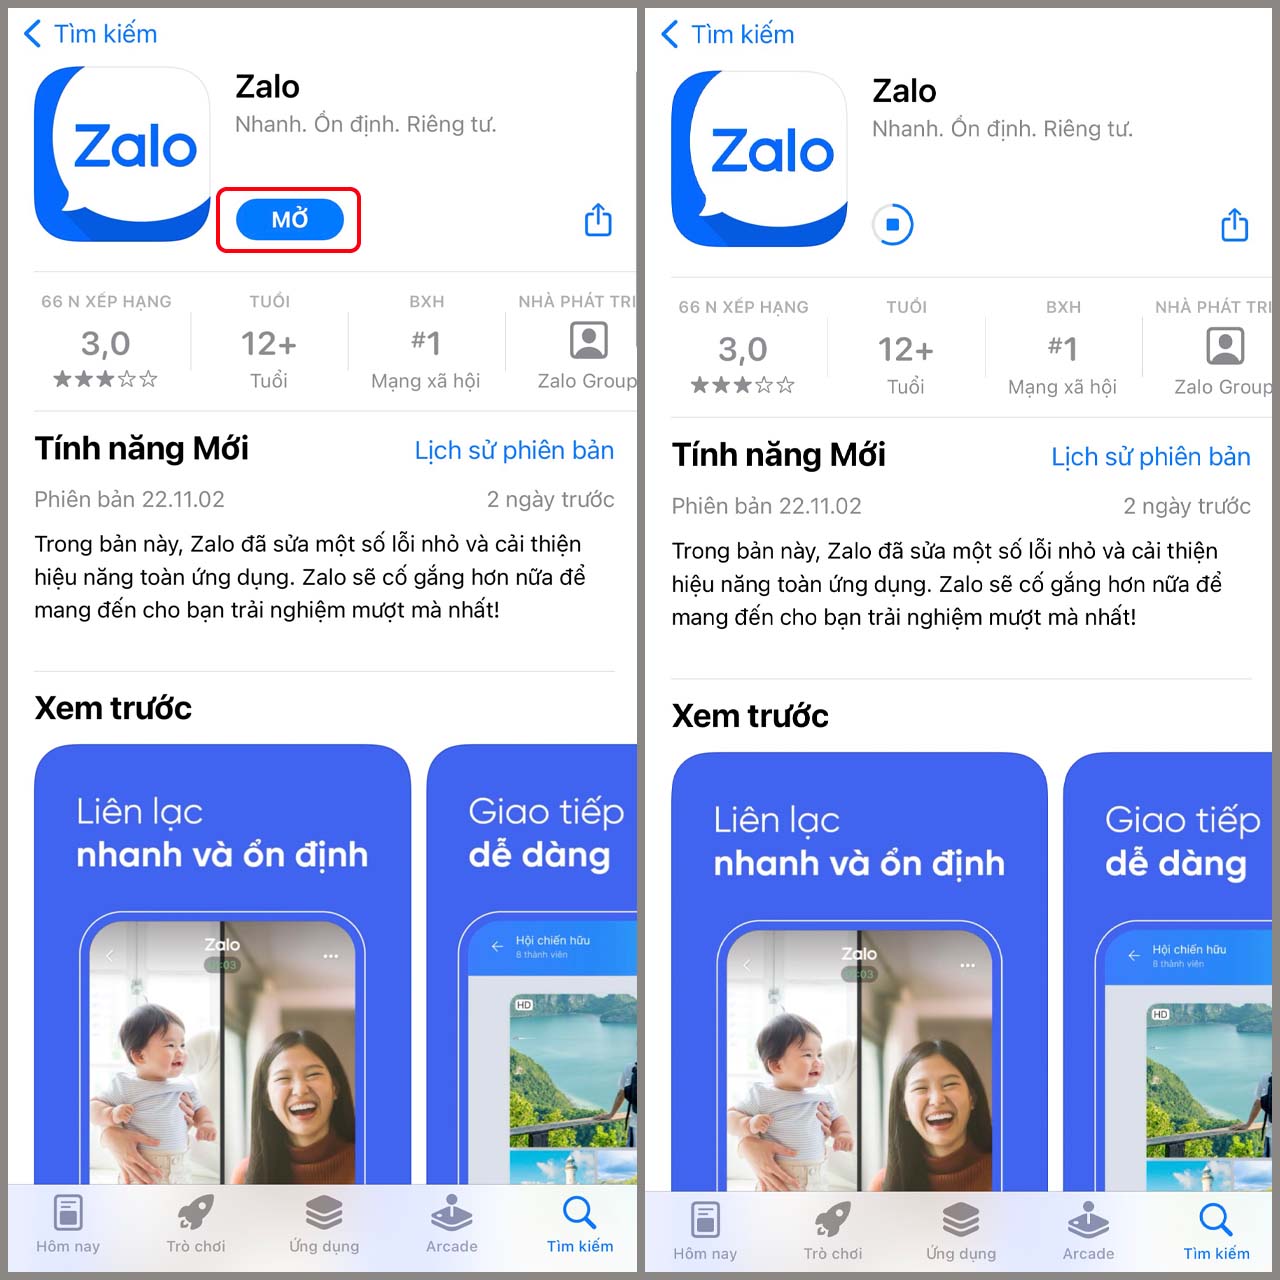 Hướng dẫn cài đặt ứng dụng Zalo trên iPhone 5s - Fptshop.com.vn